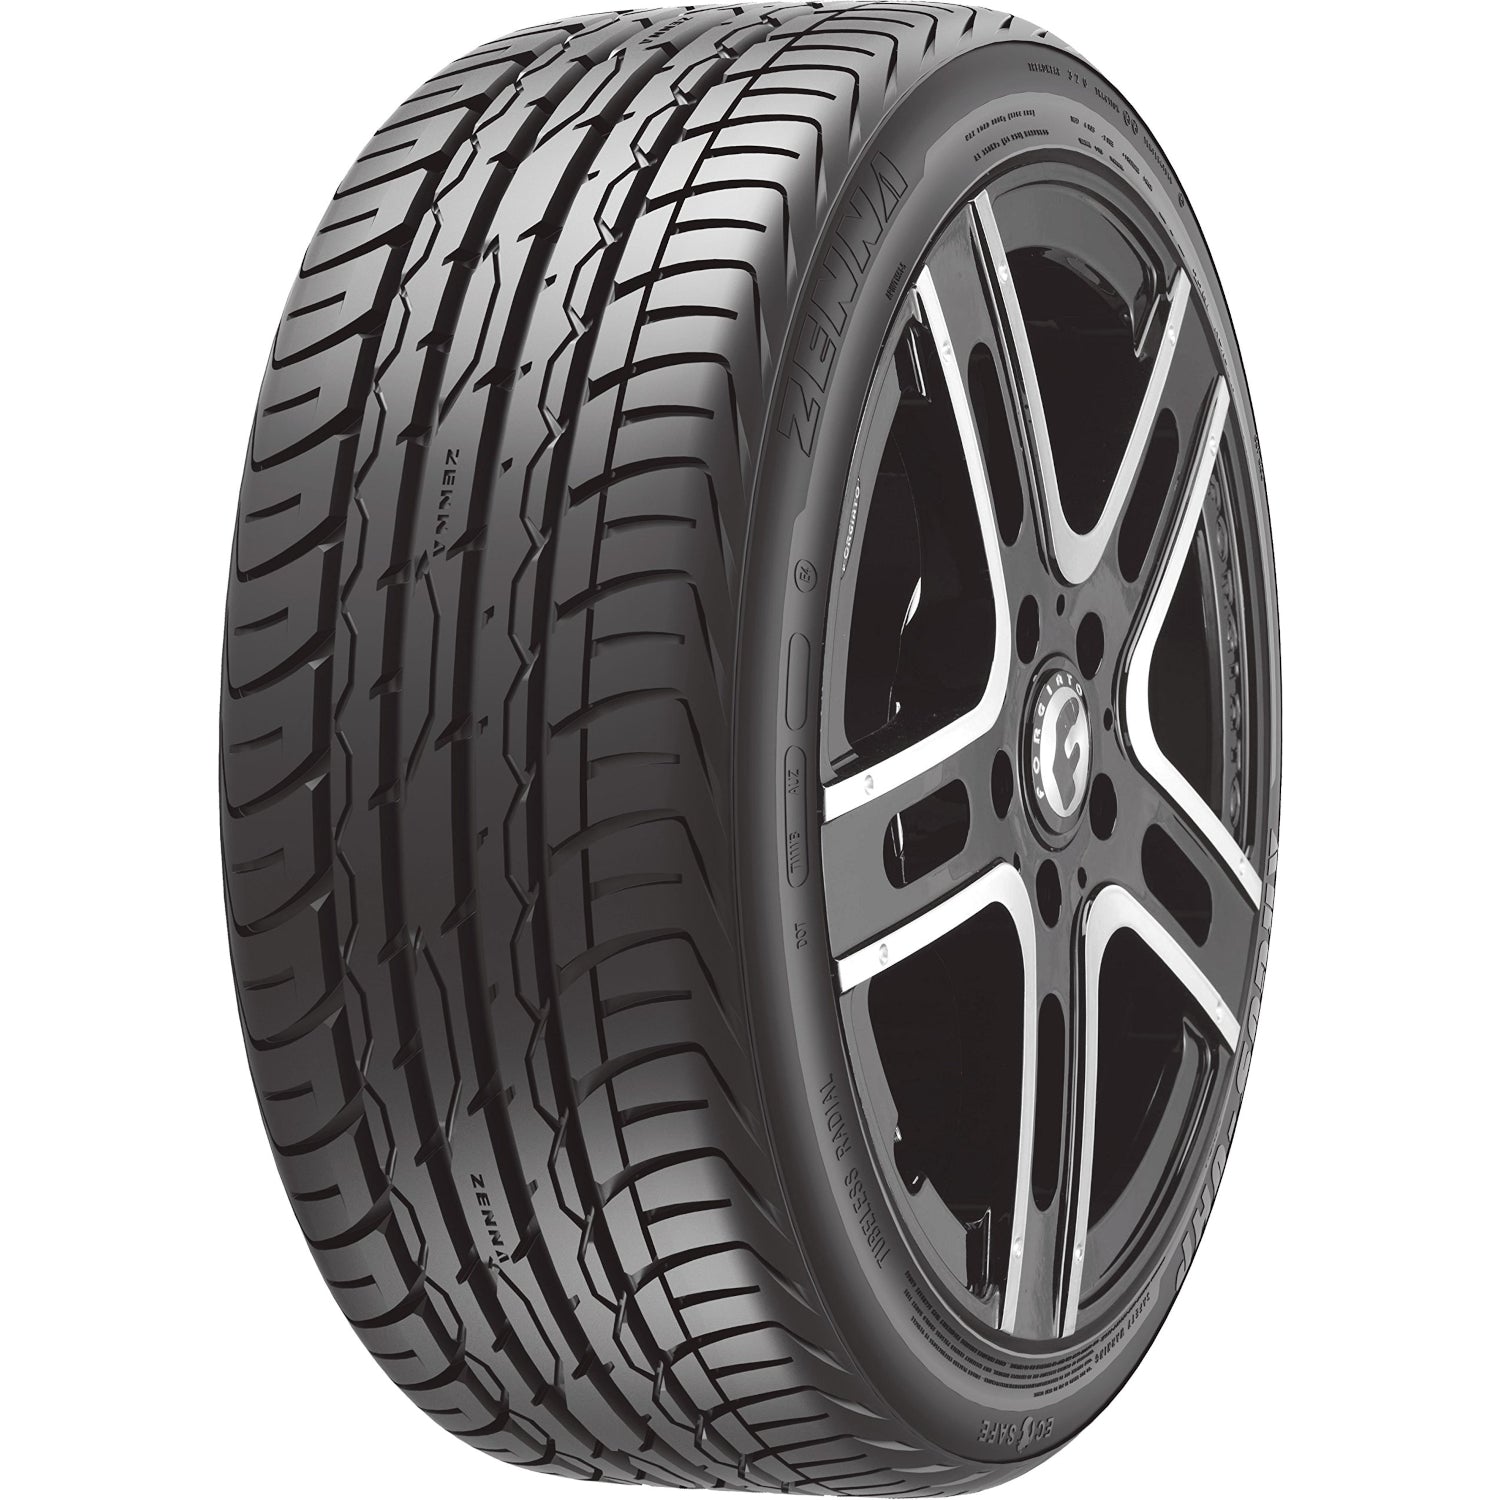 Zenna Argus UHP 275/30ZR20 (26.5x10.8R 20) Tires